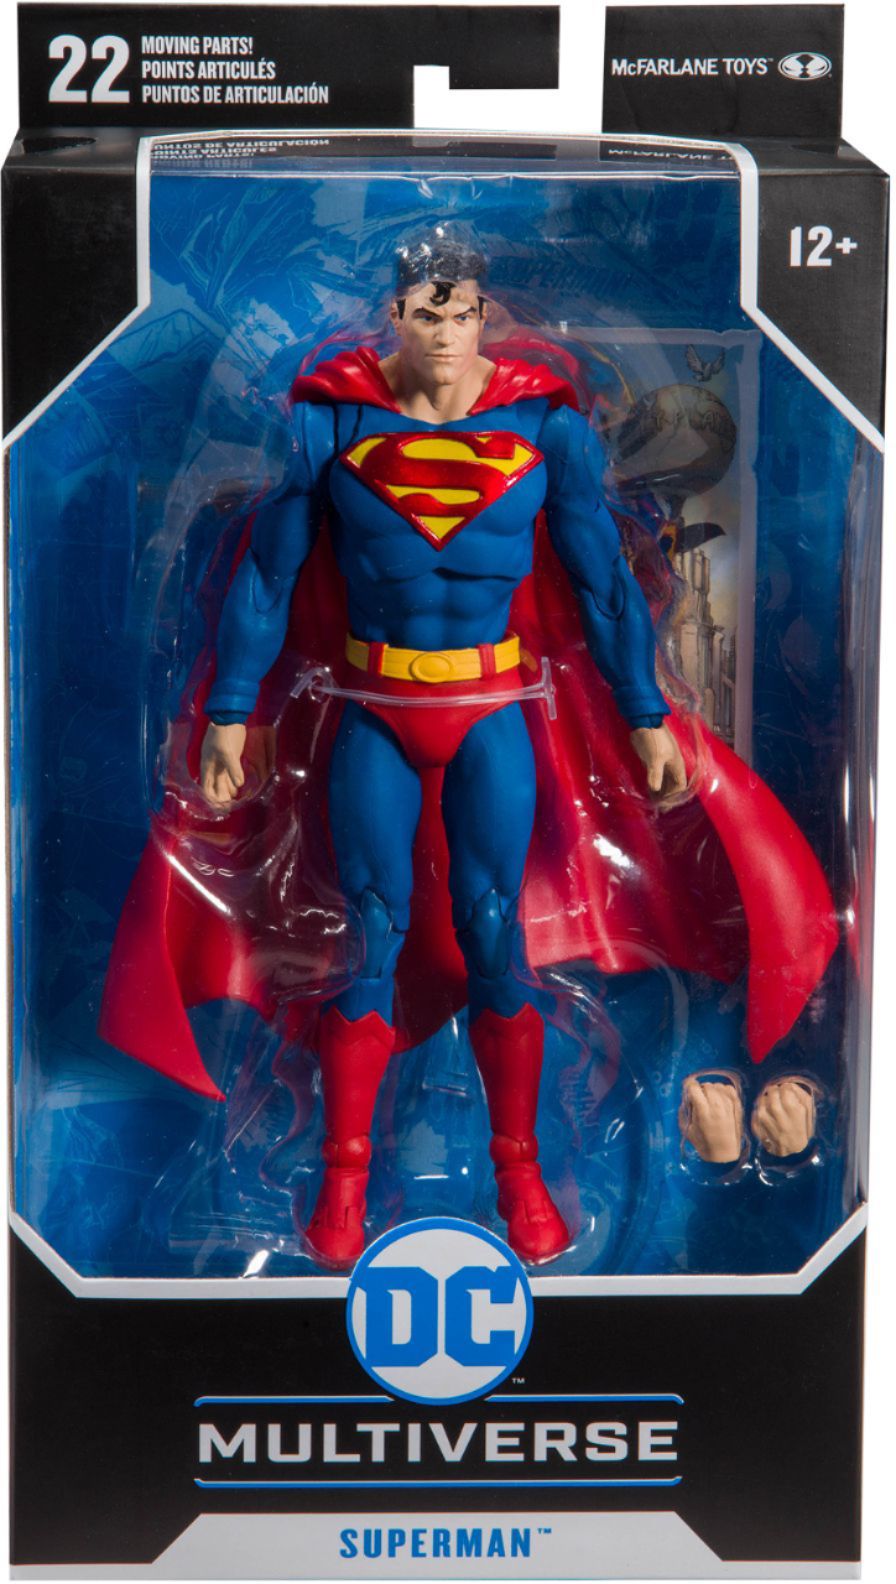 Figurine articulée Mcfarlane toys DC Multiverse figurine Superman